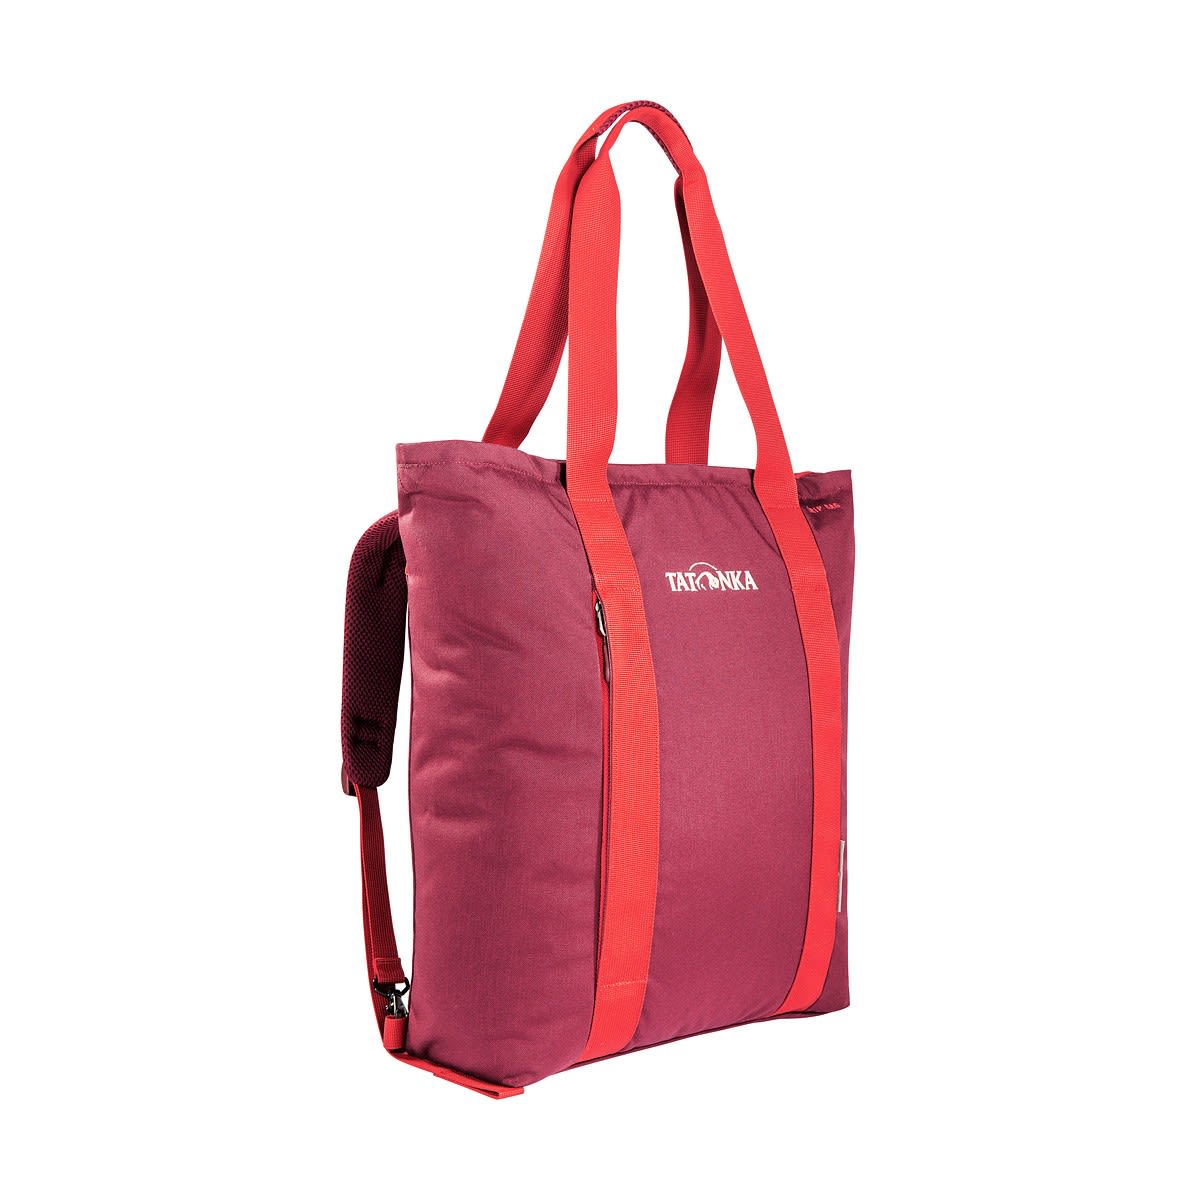 Tatonka Grip Bag Rot- Einkaufstaschen- Grsse 13l - Farbe Bordeaux Red unter Tatonka